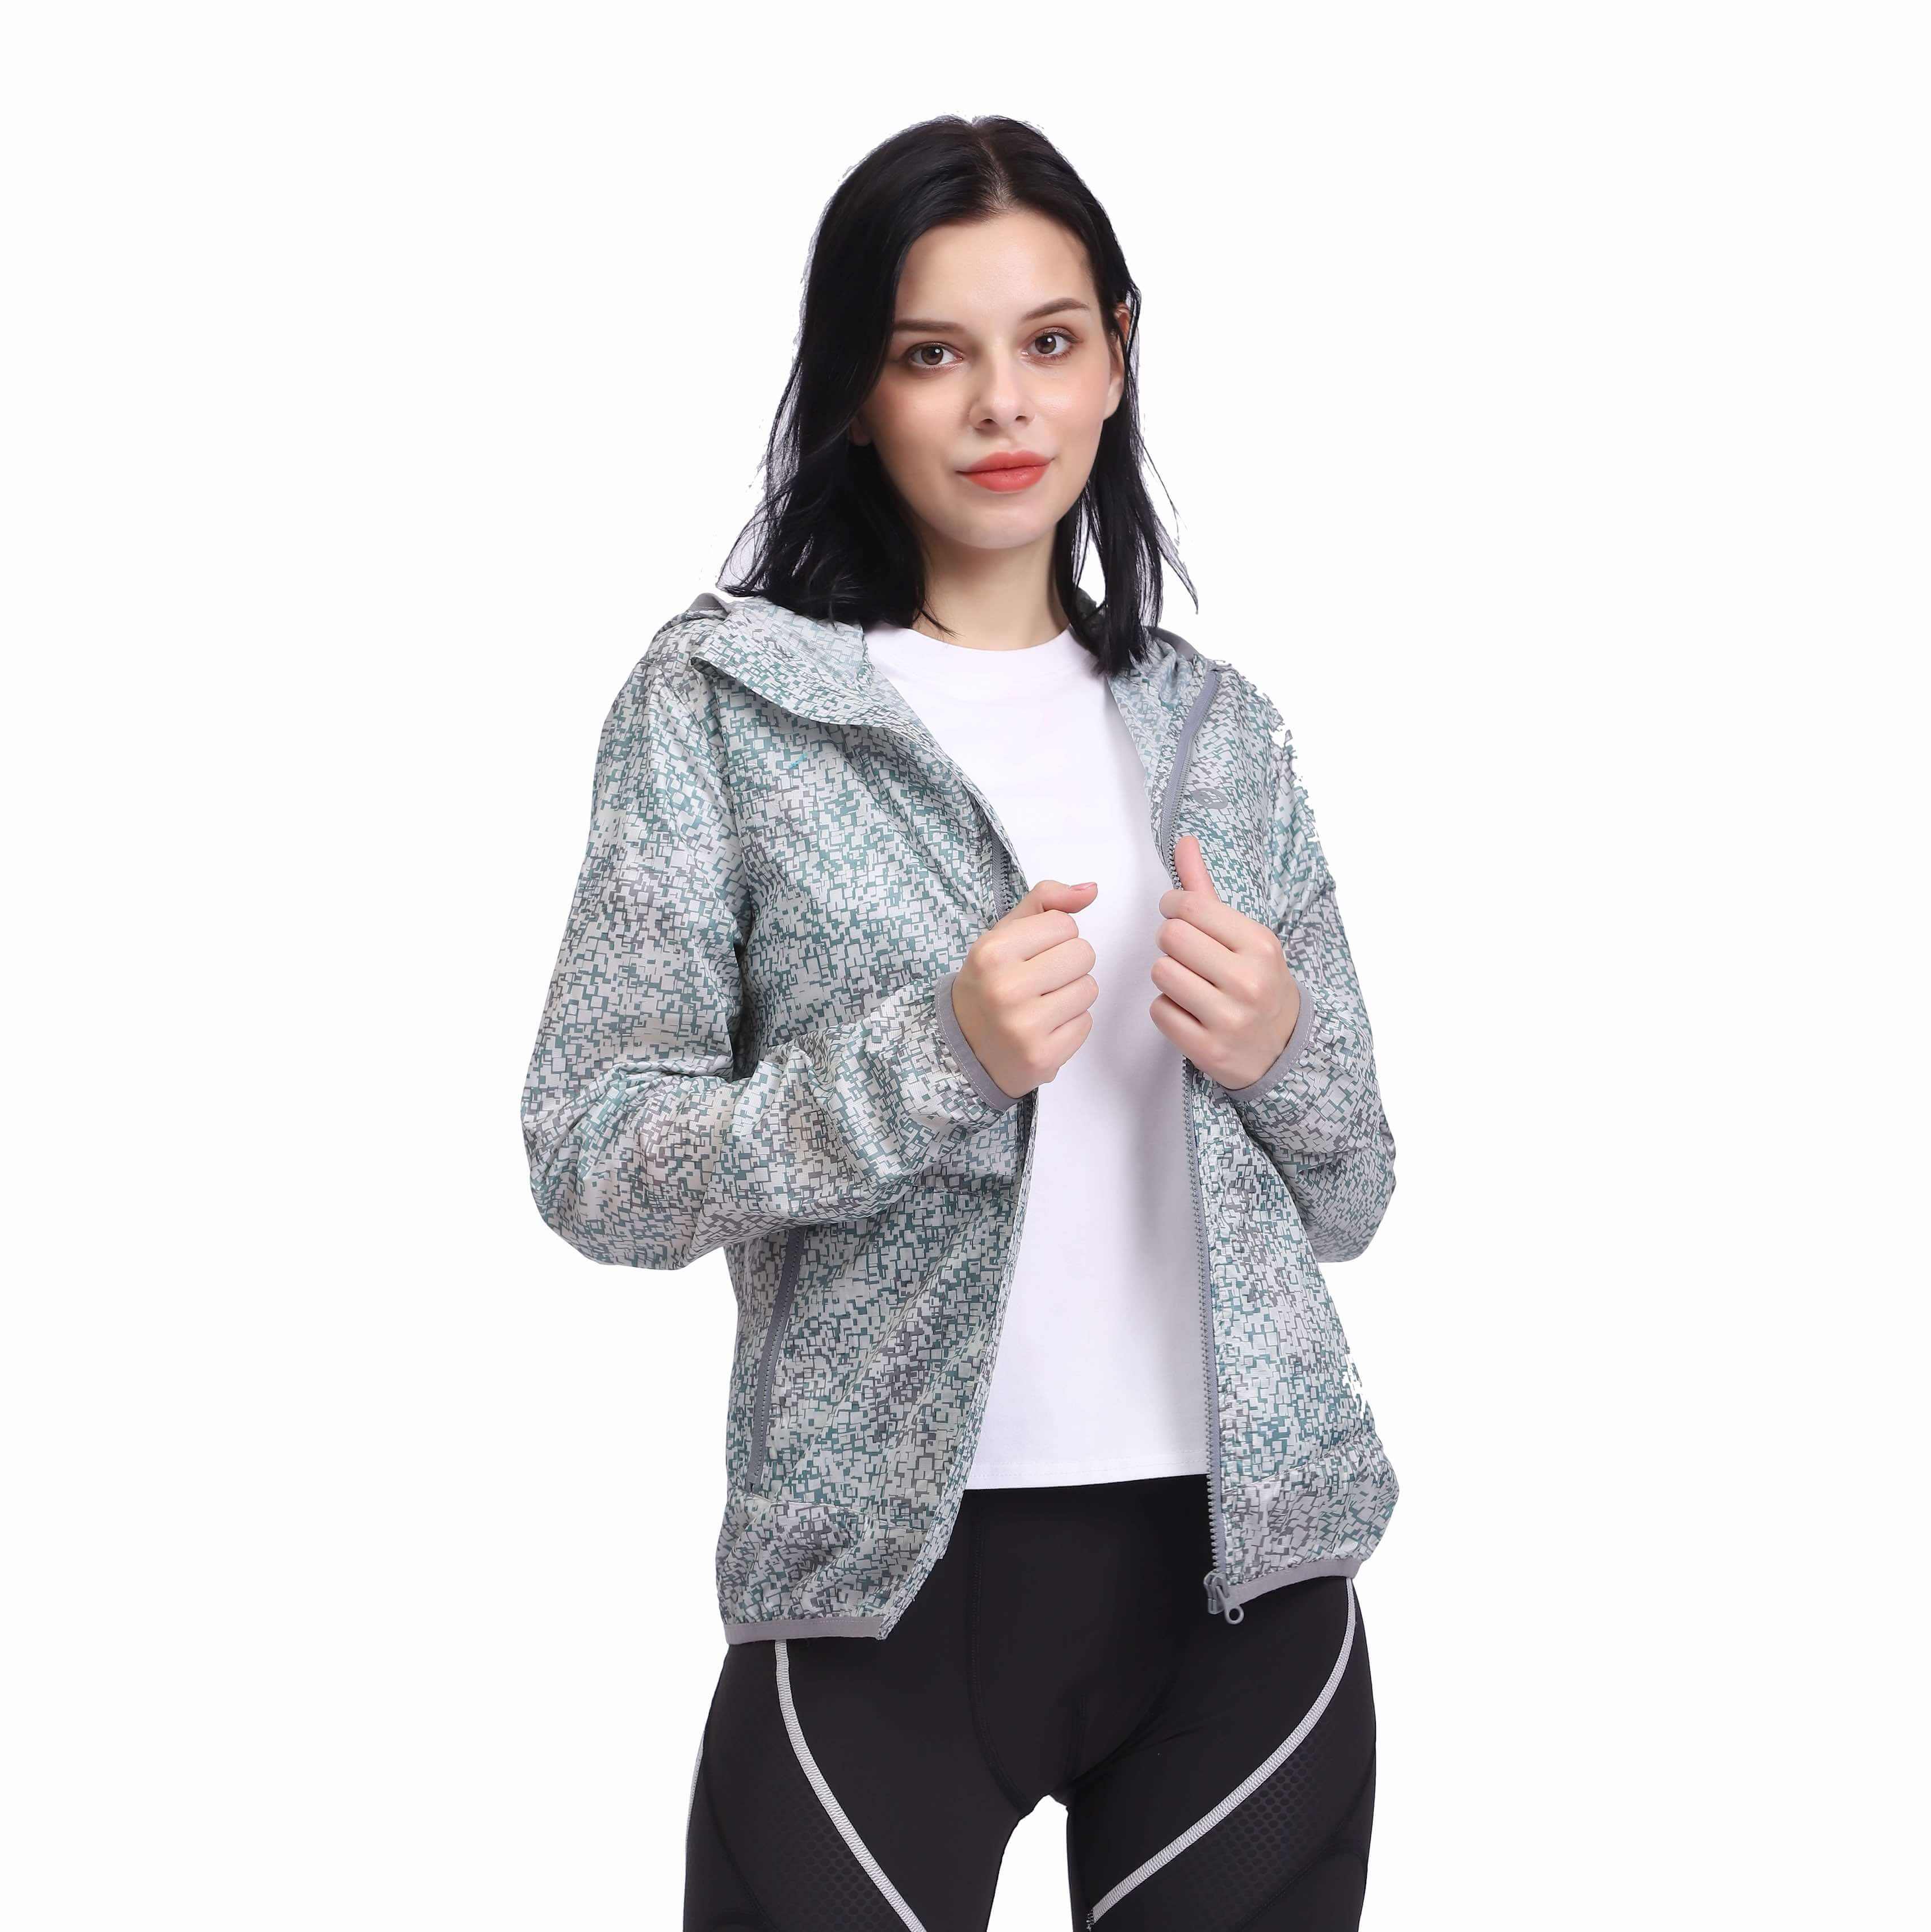 Women's Lightweight Thin Waterproof Windbreaker Jackets for Outdoor Activities